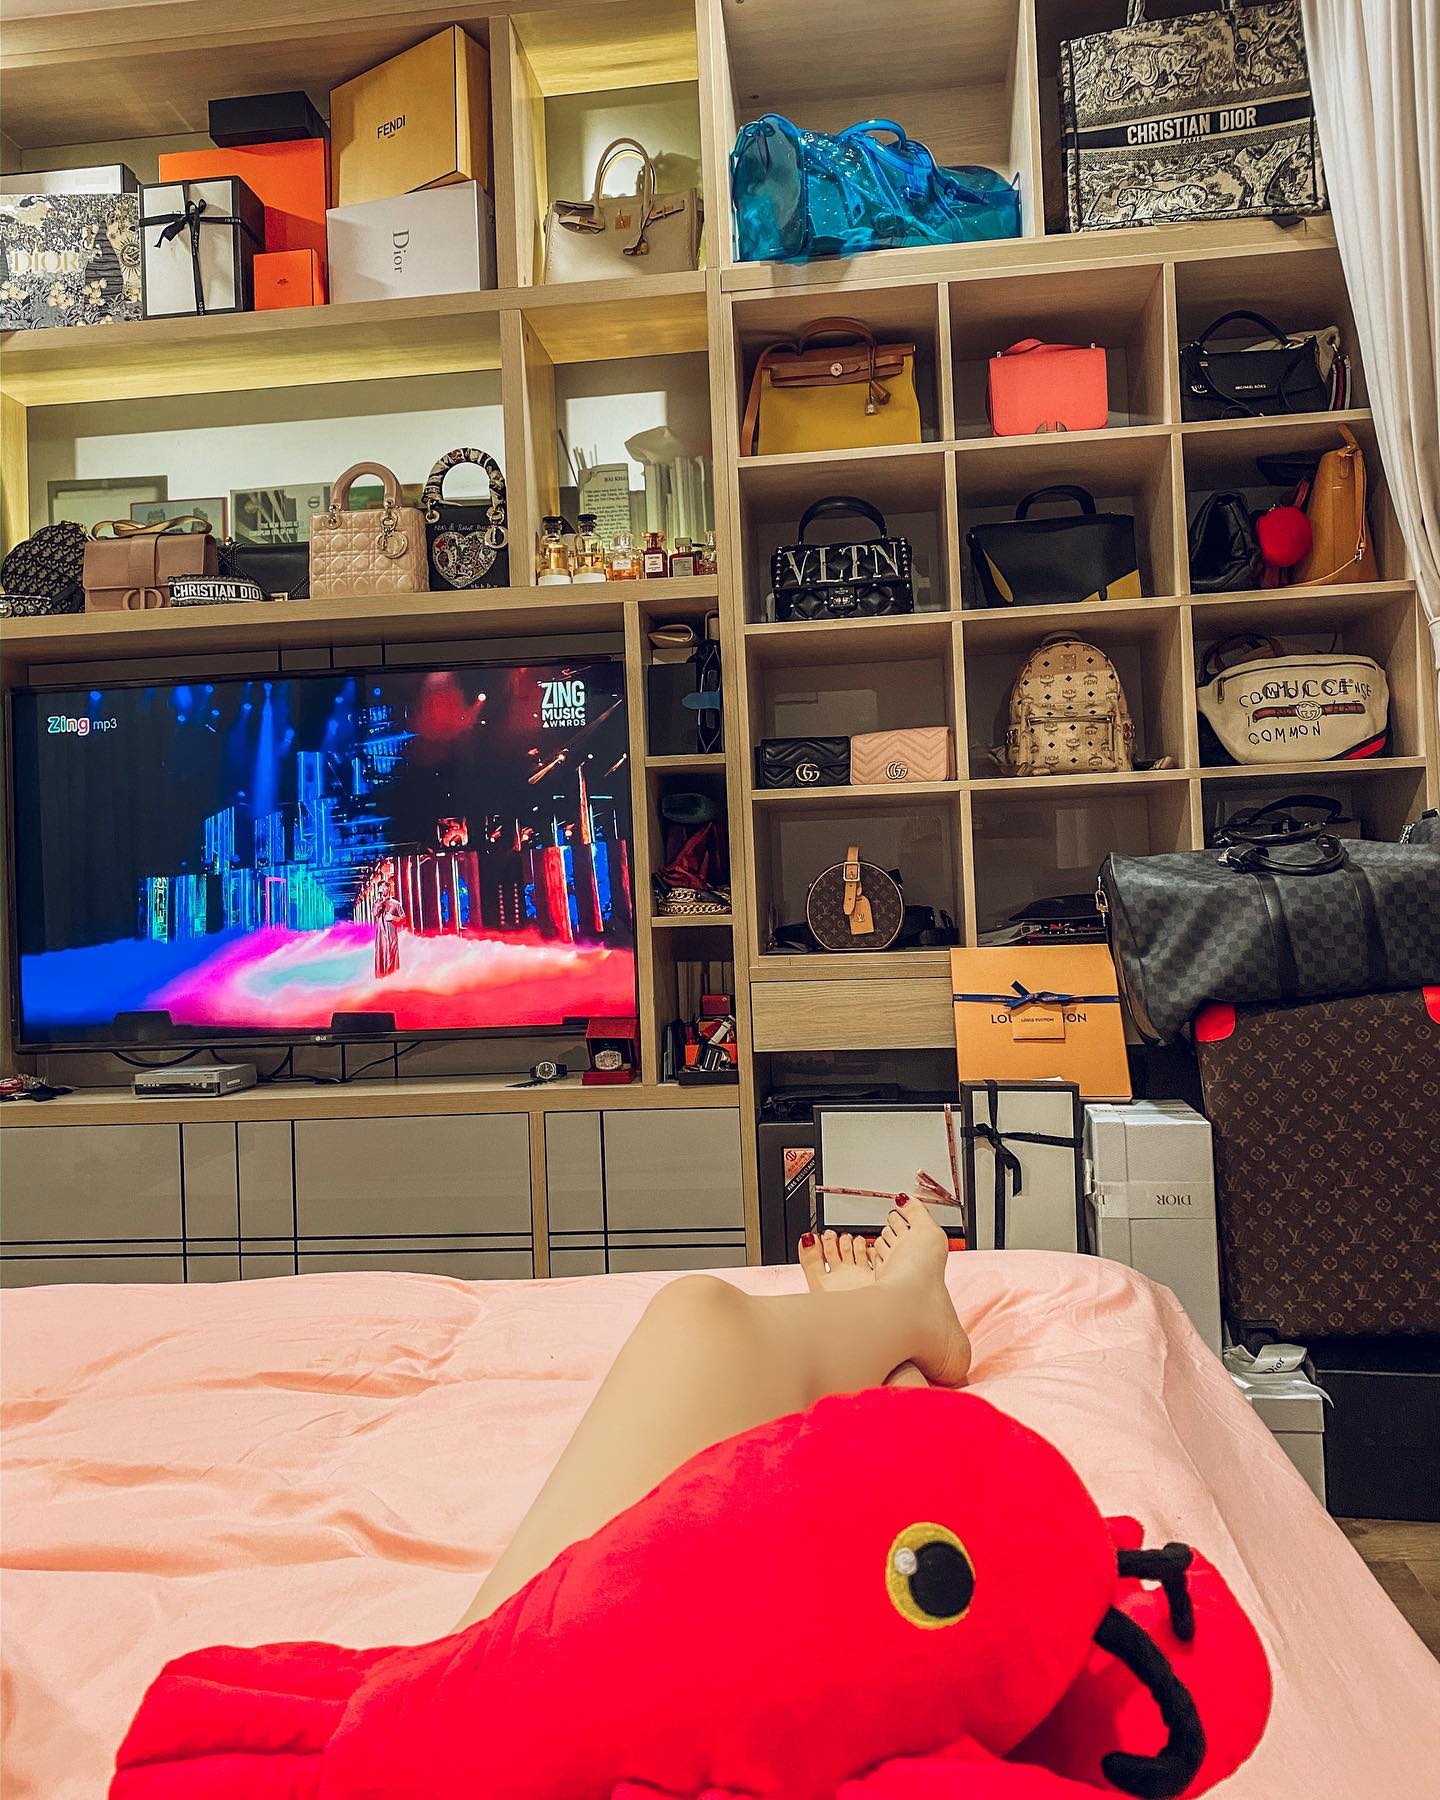 Bên trong căn hộ của Tân Hoa hậu Bùi Quỳnh Hoa: Túi hiệu không có chỗ cất, để lộ một thú chơi “ngốn” tiền